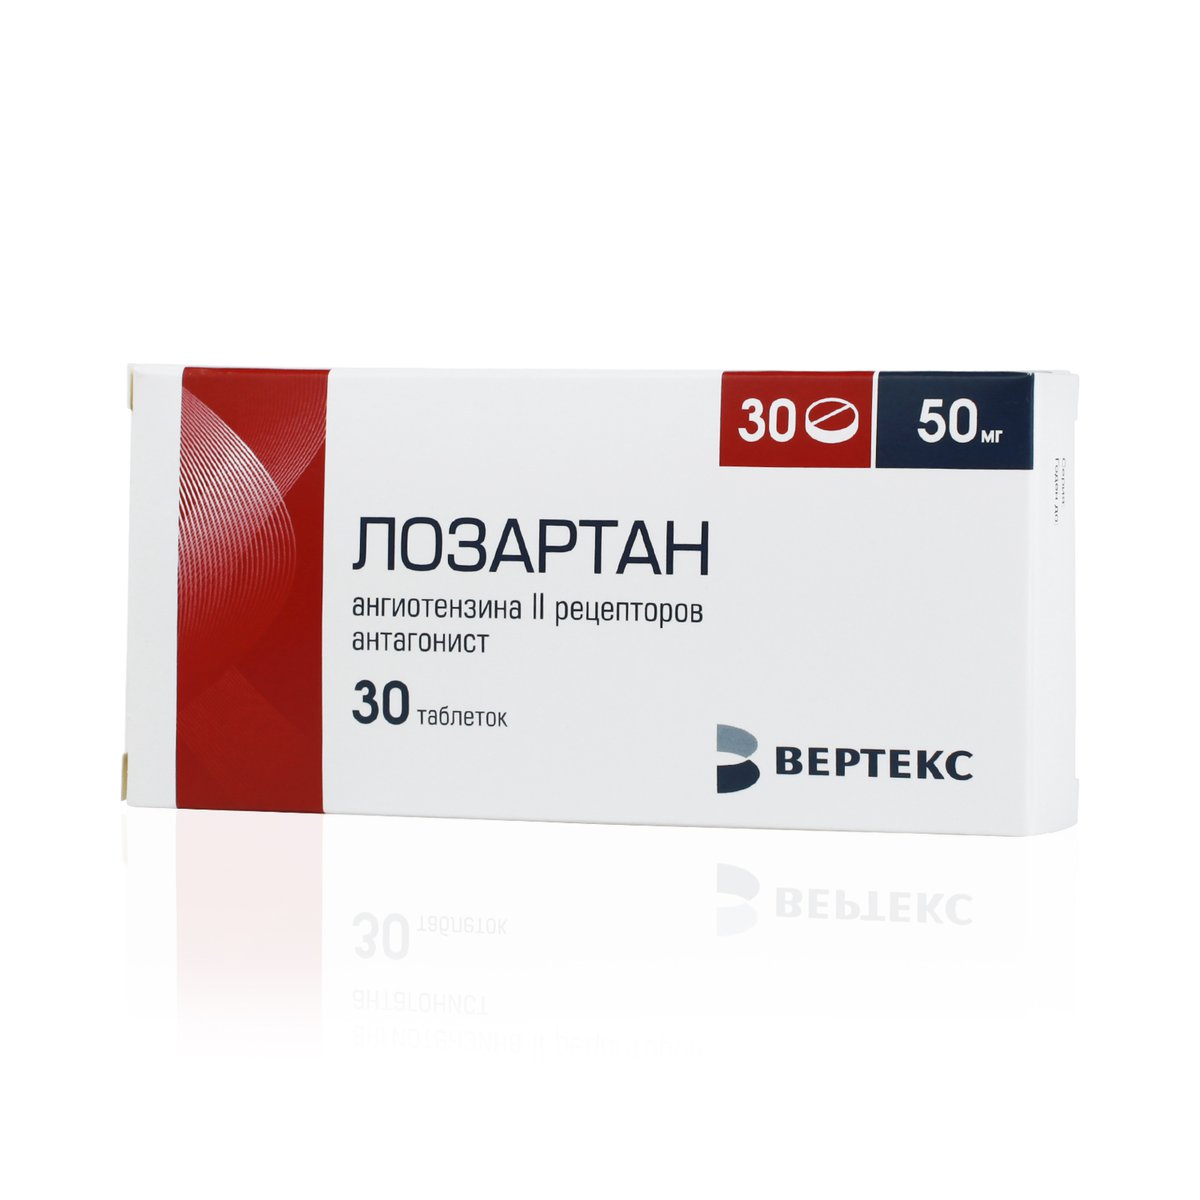 Лозартан вертекс (таблетки, 30 шт, 50 мг) - цена,  онлайн в .